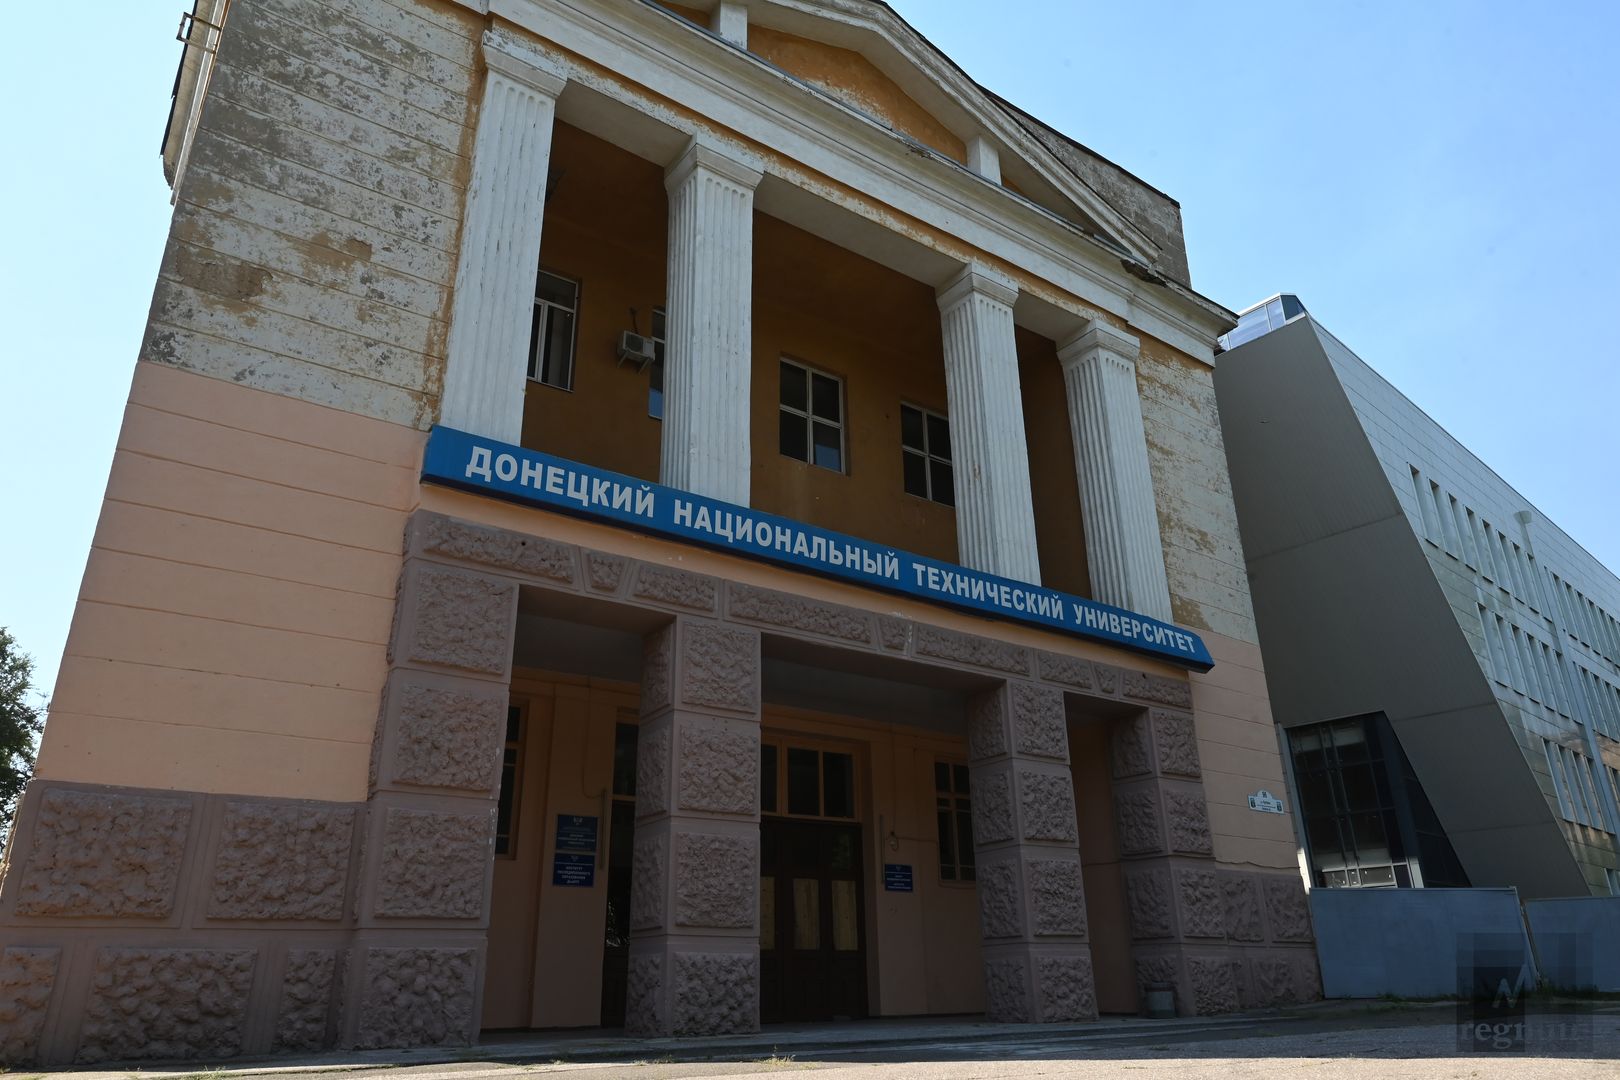 Донецкий национальный технический университет